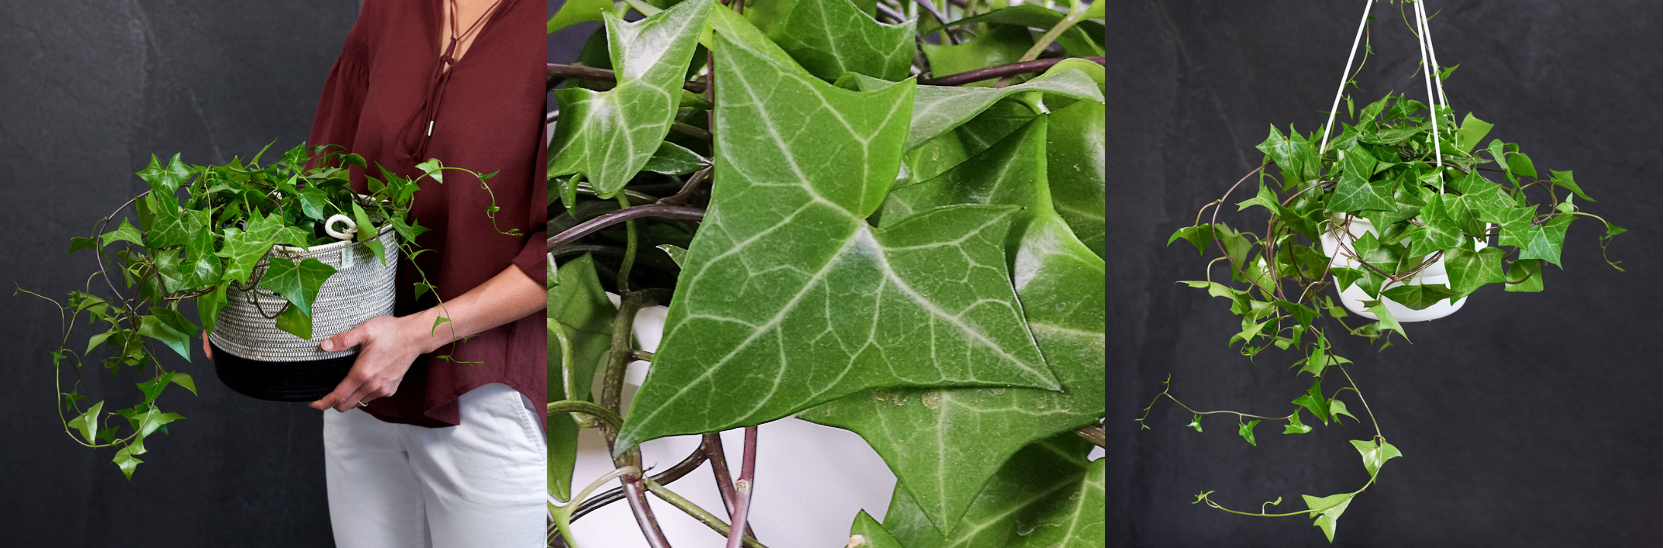 20 Fast Growing Indoor Plants -Natal Ivy